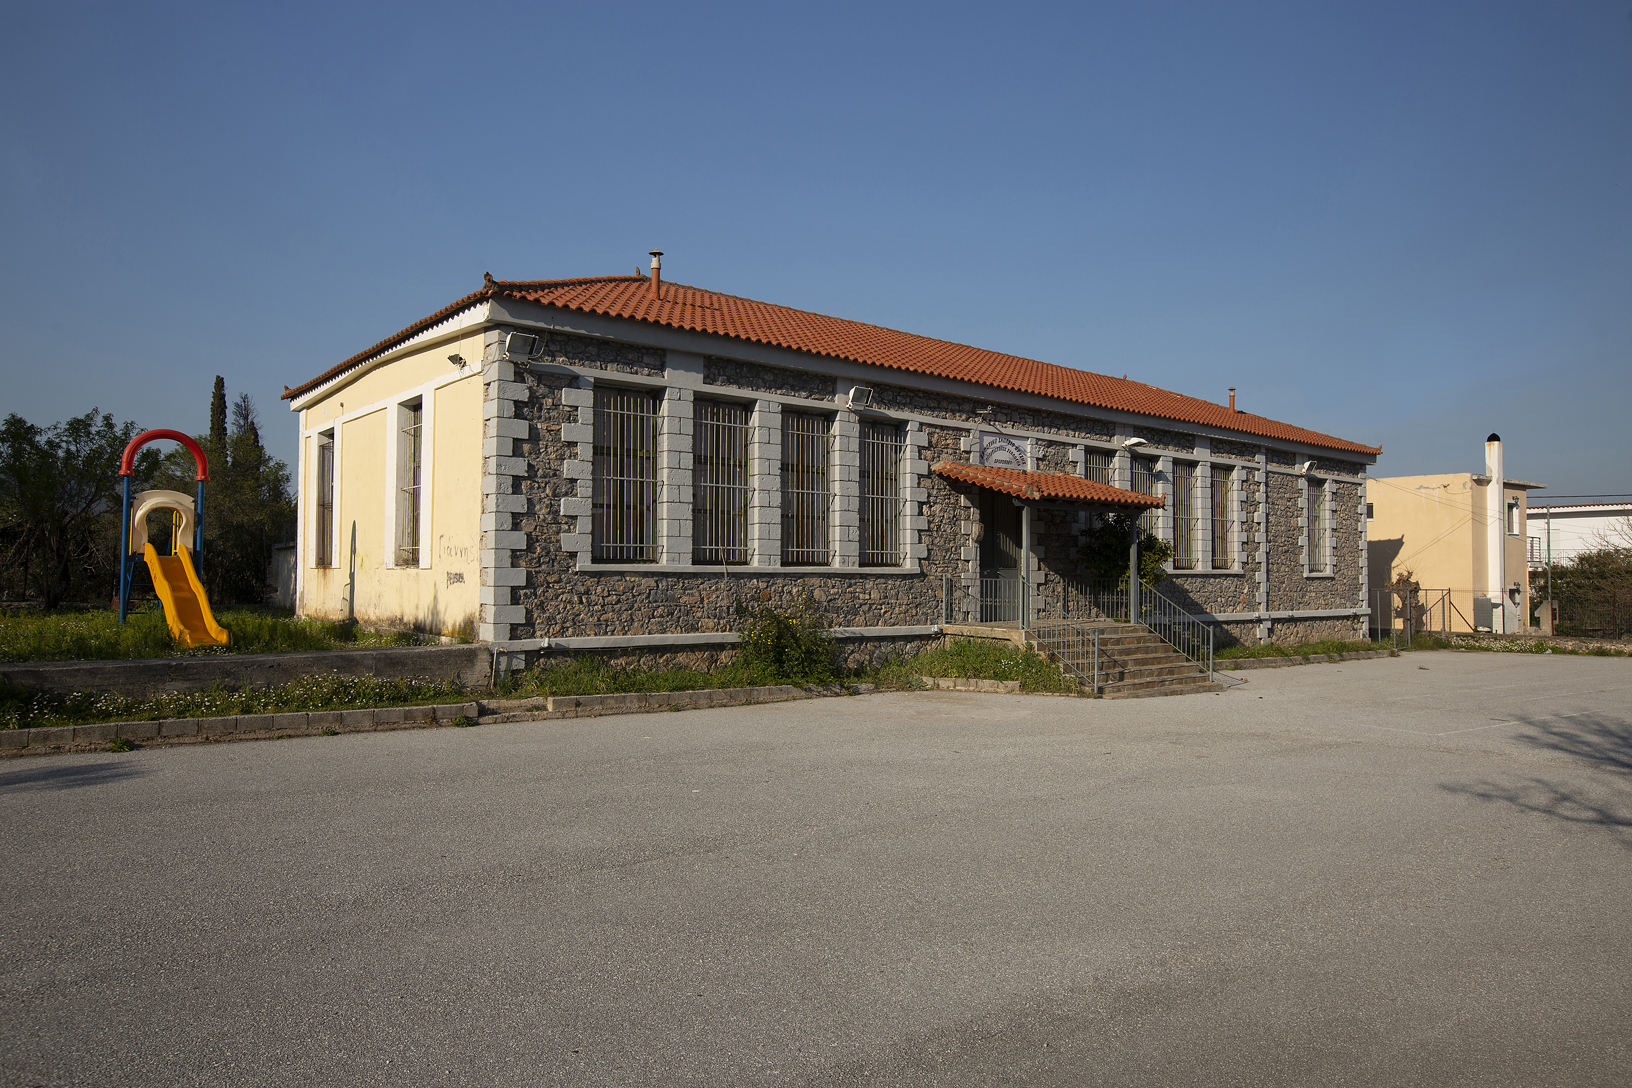 Δημοτικό σχολείο, χωριό Βρύση. Φωτογραφία: ©Βασίλης Συκάς, για τον Δήμο Κύμης-Αλιβερίου